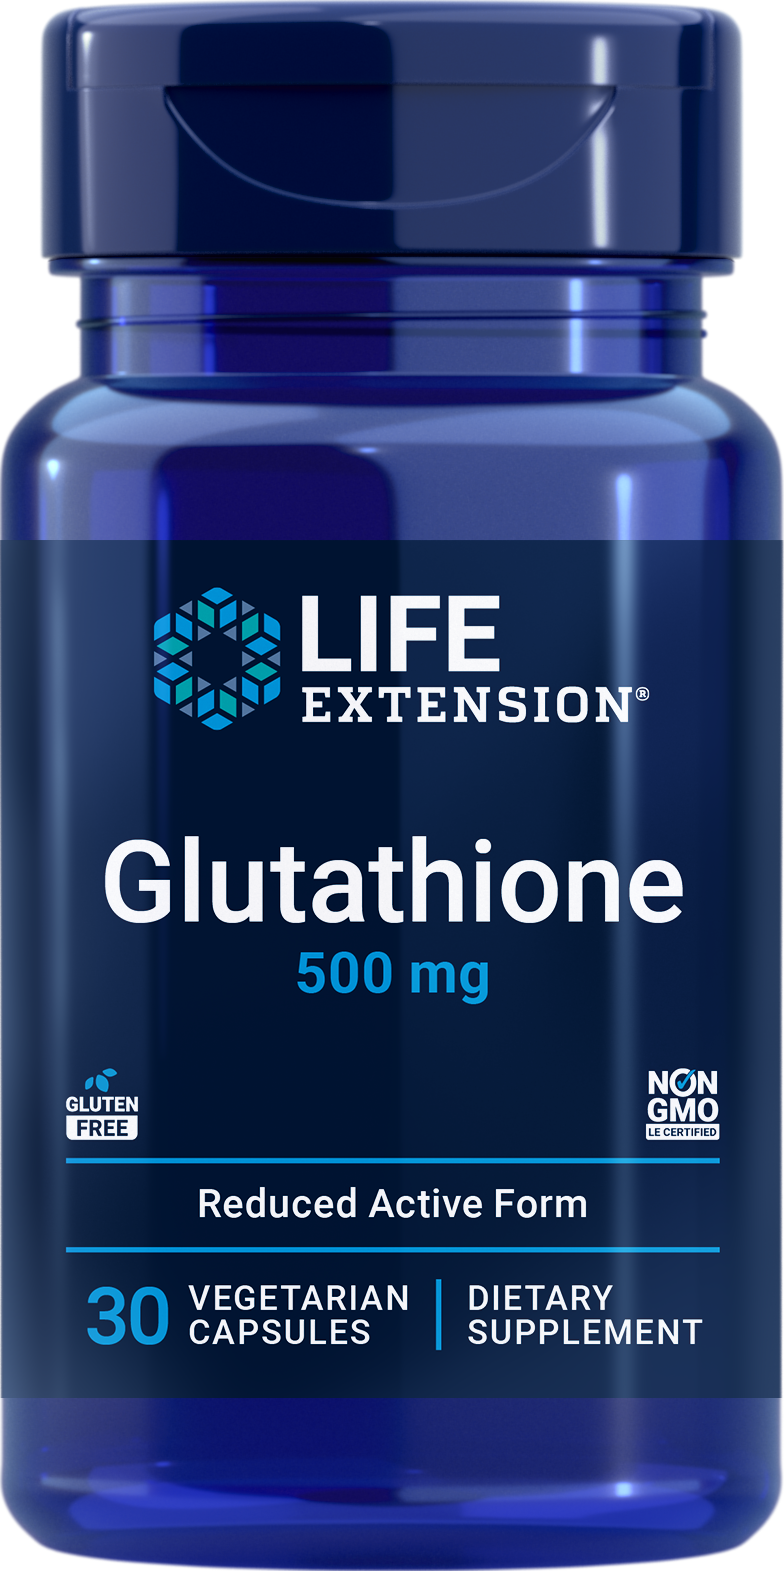 Life Extension Europe Glutathione 500 mg, 30 capsules végétariennes pour protéger les cellules du stress oxydatif, etc.